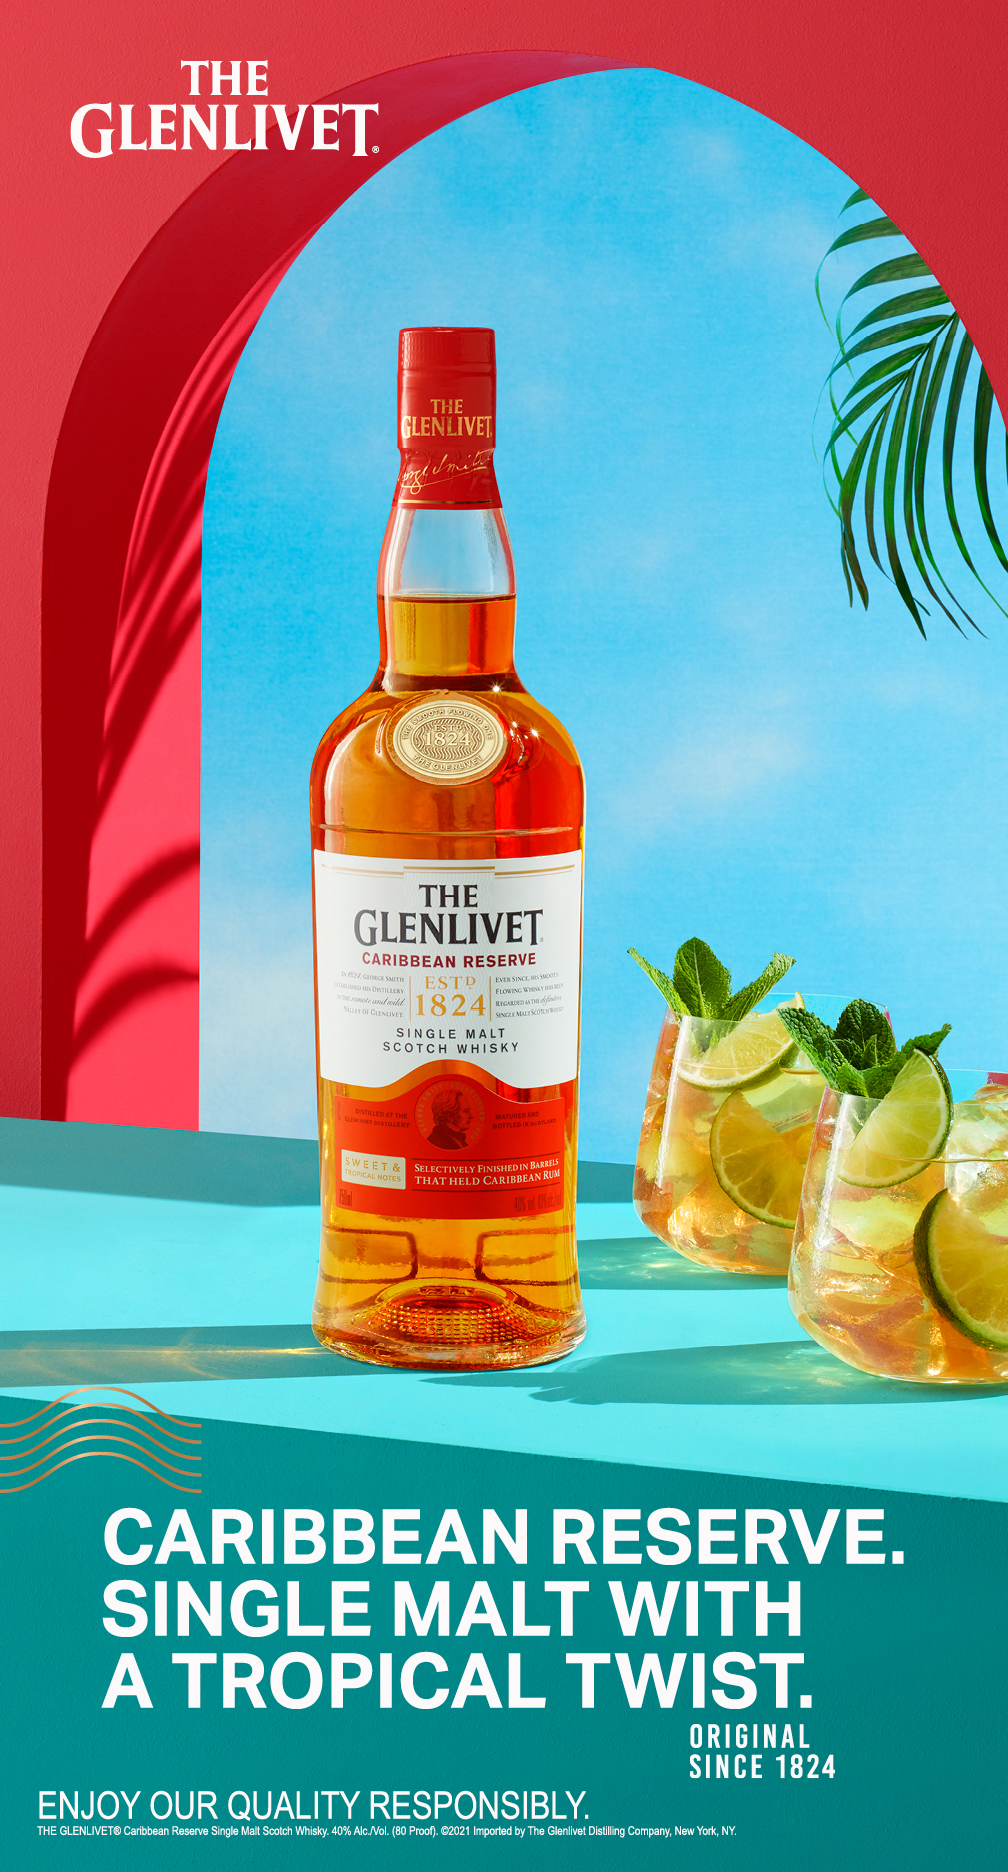 The Glenlivet Carribean reserve Bottle with 2 cocktails